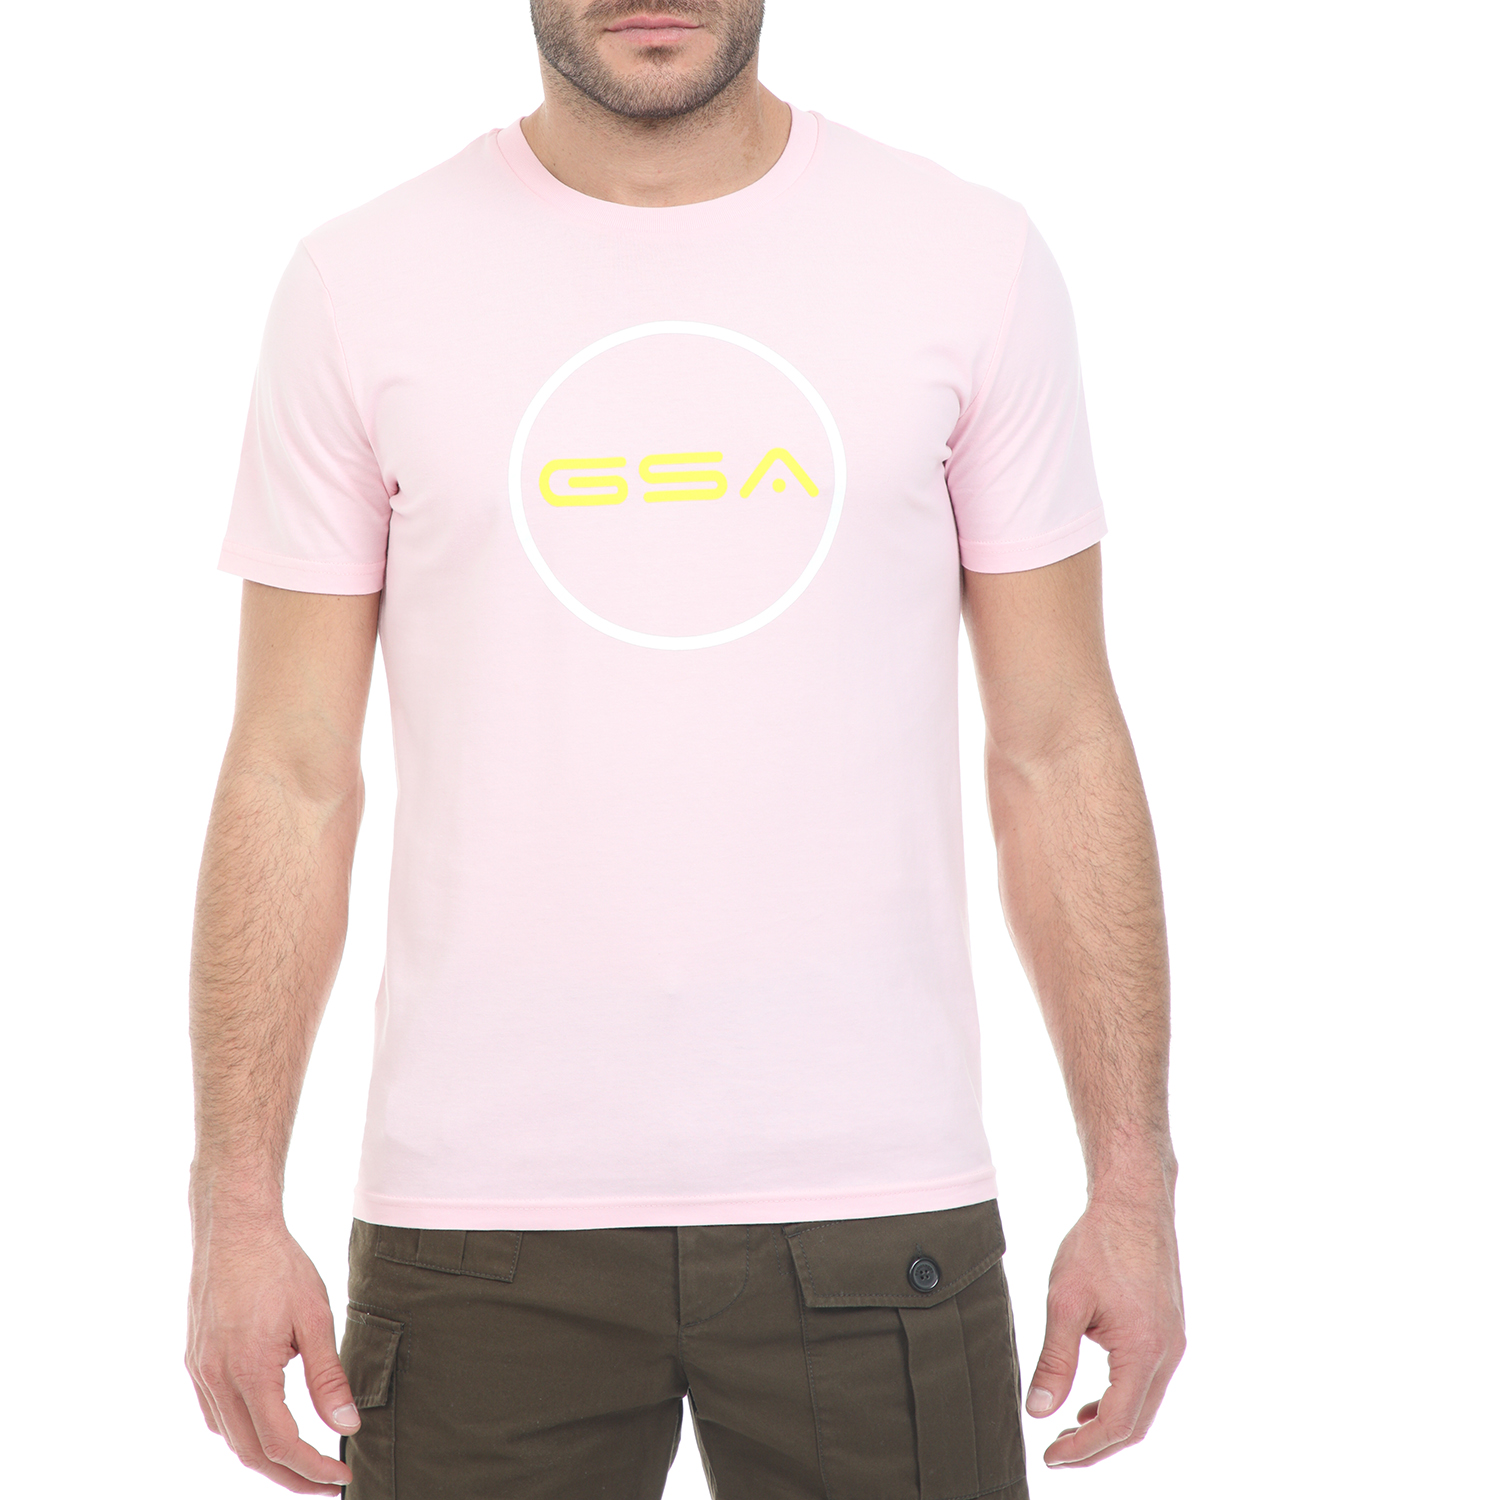 Ανδρικά/Ρούχα/Μπλούζες/Κοντομάνικες GSA - Ανδρικό t-shirt GSA ORGANIC PLUS SUPERLOGO TRE ροζ